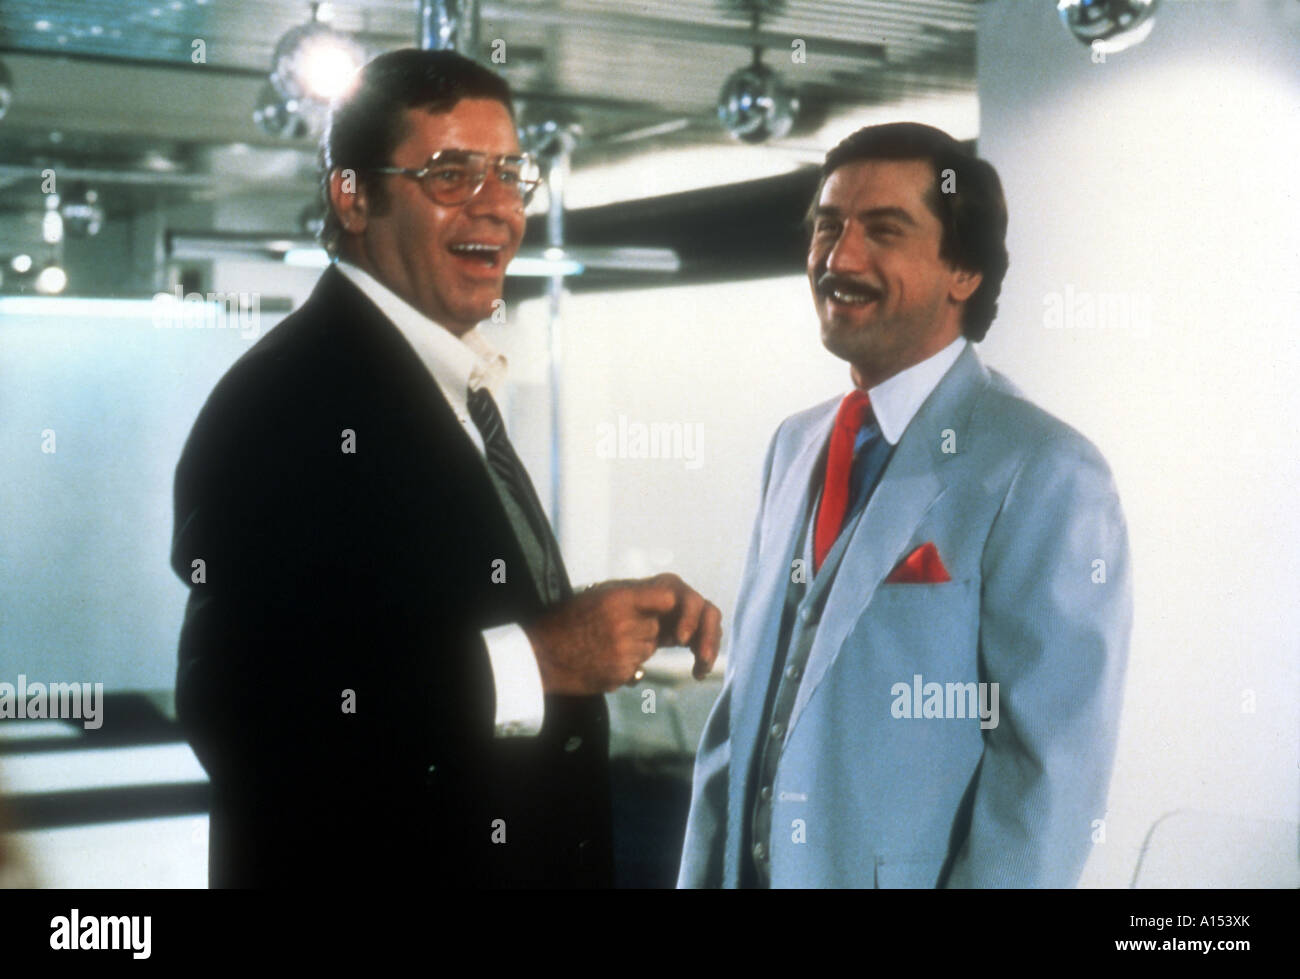 Le Roi de comédie Année 1983 réalisateur Martin Scorsese Robert de Niro Jerry Lewis Banque D'Images